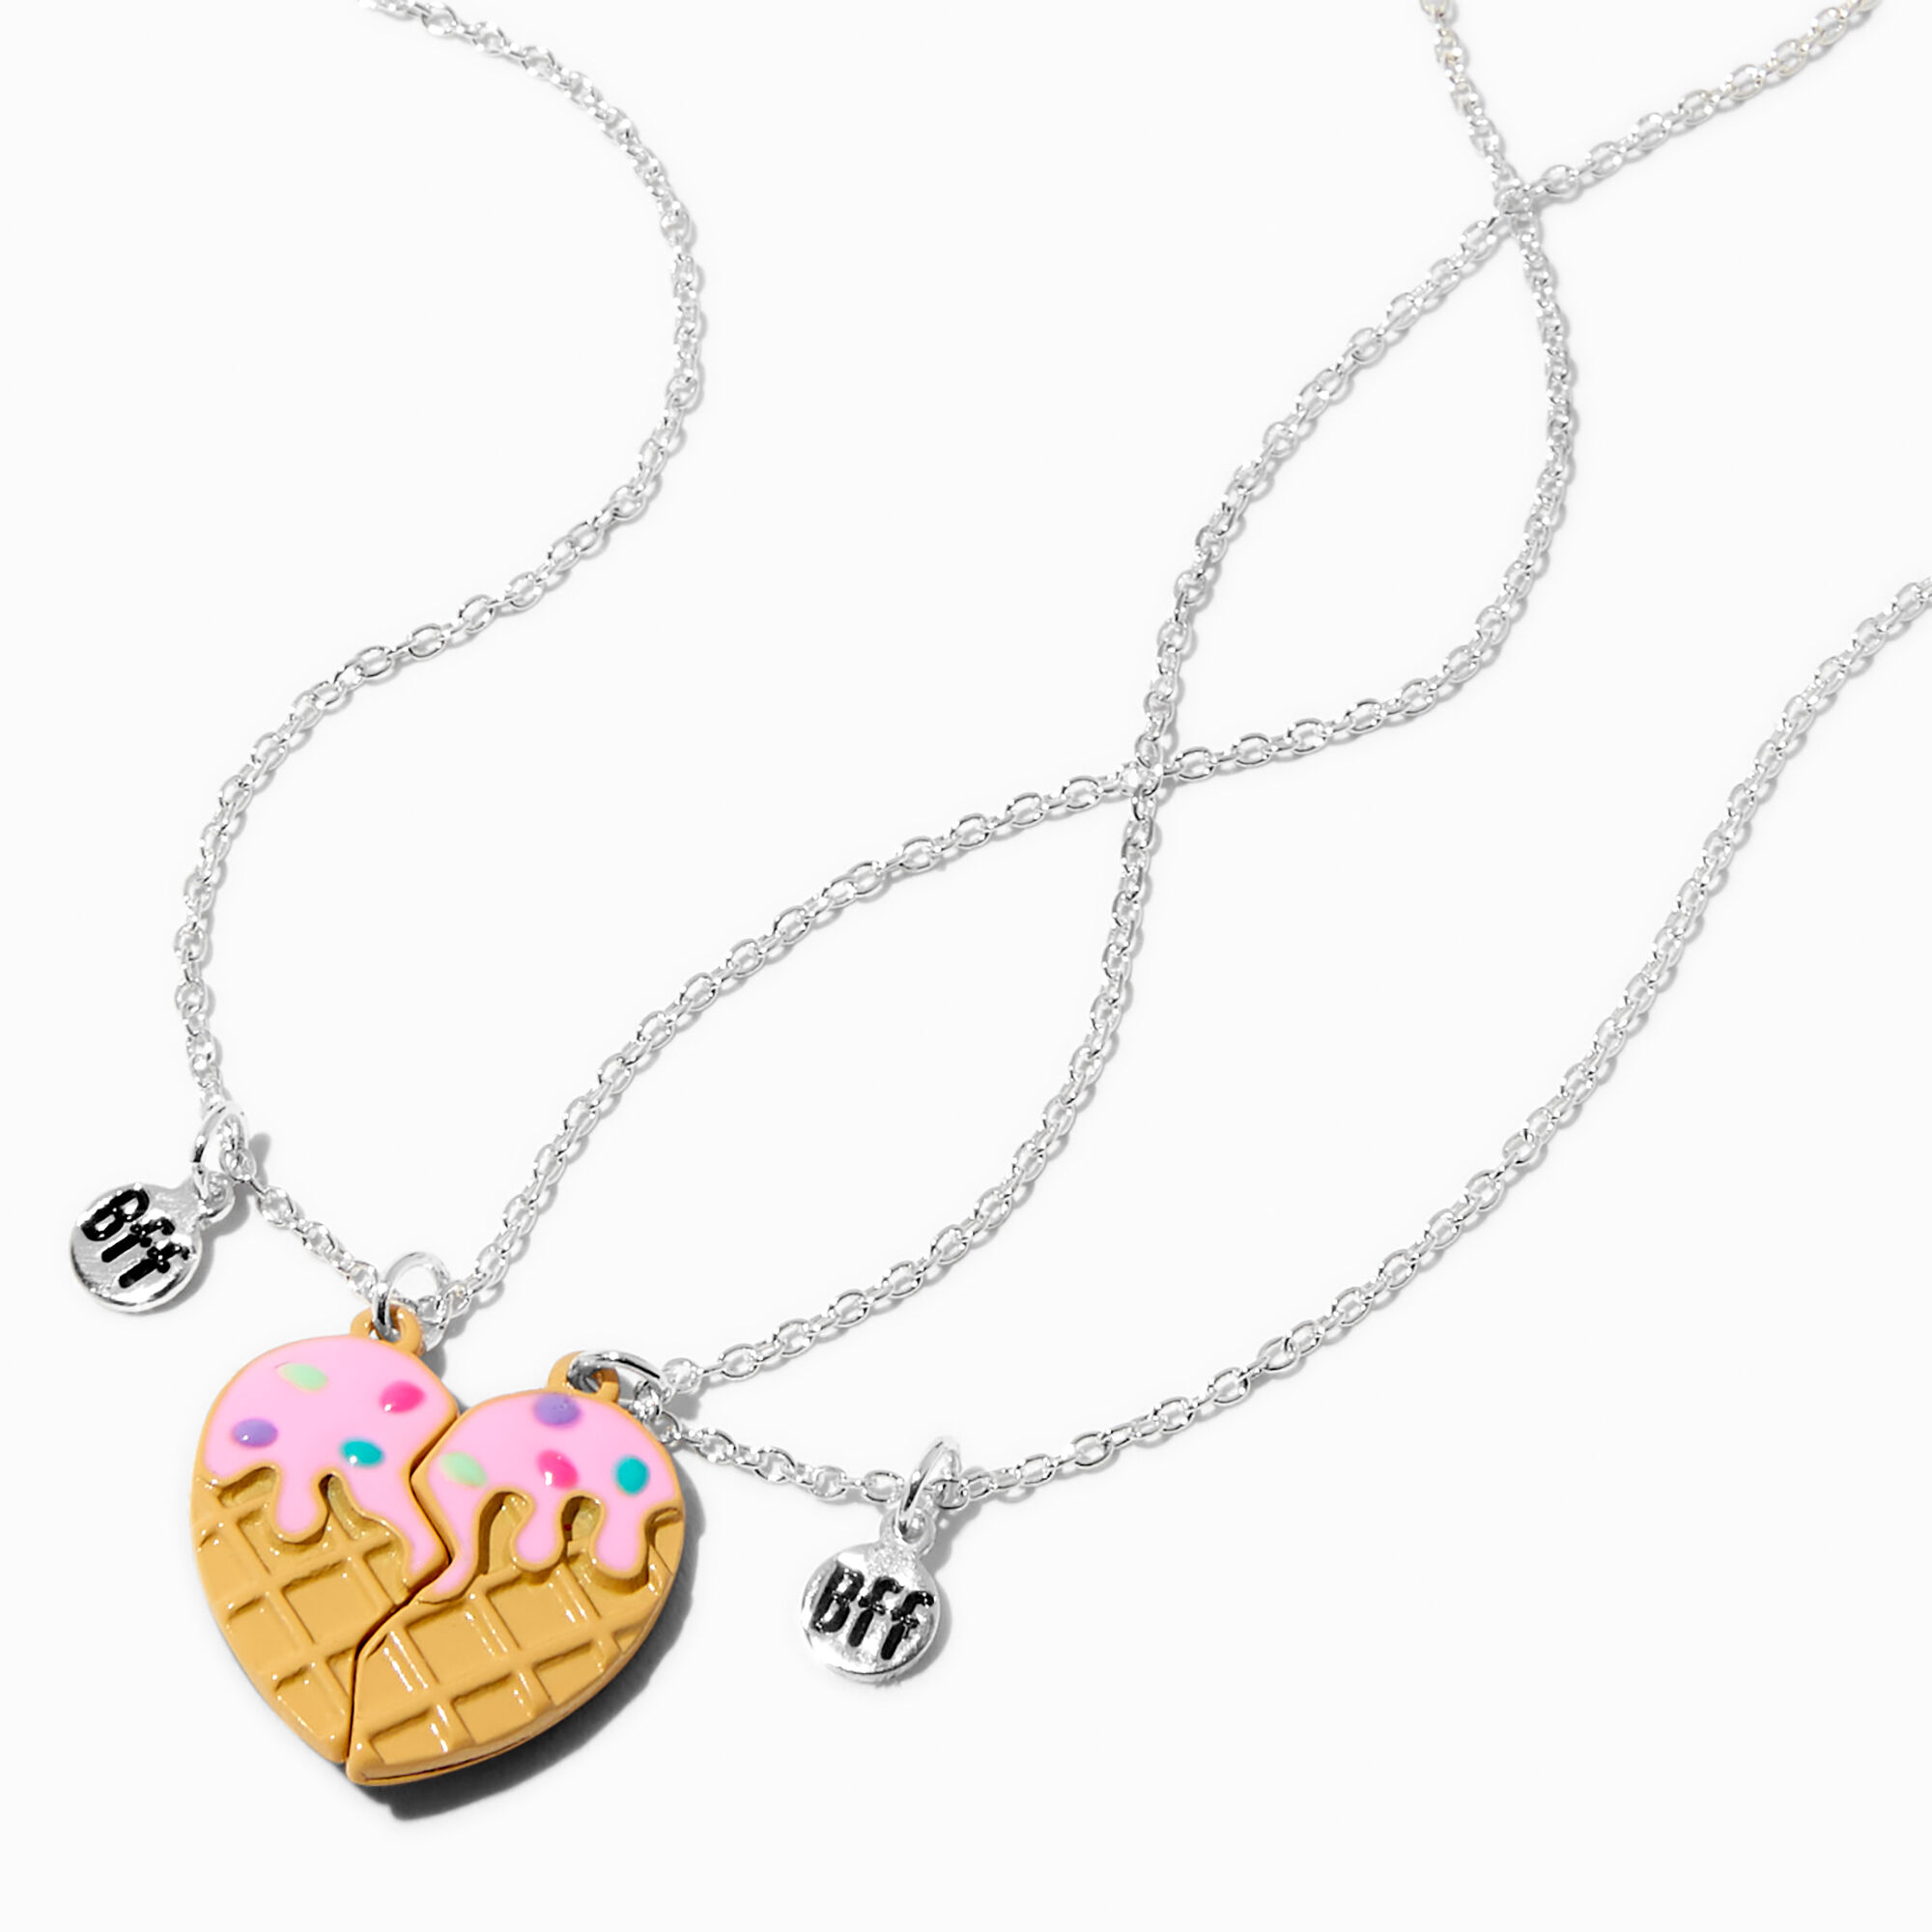 Best Friends Lock & Key Pendant Necklaces - 2 Pack | Claire's US